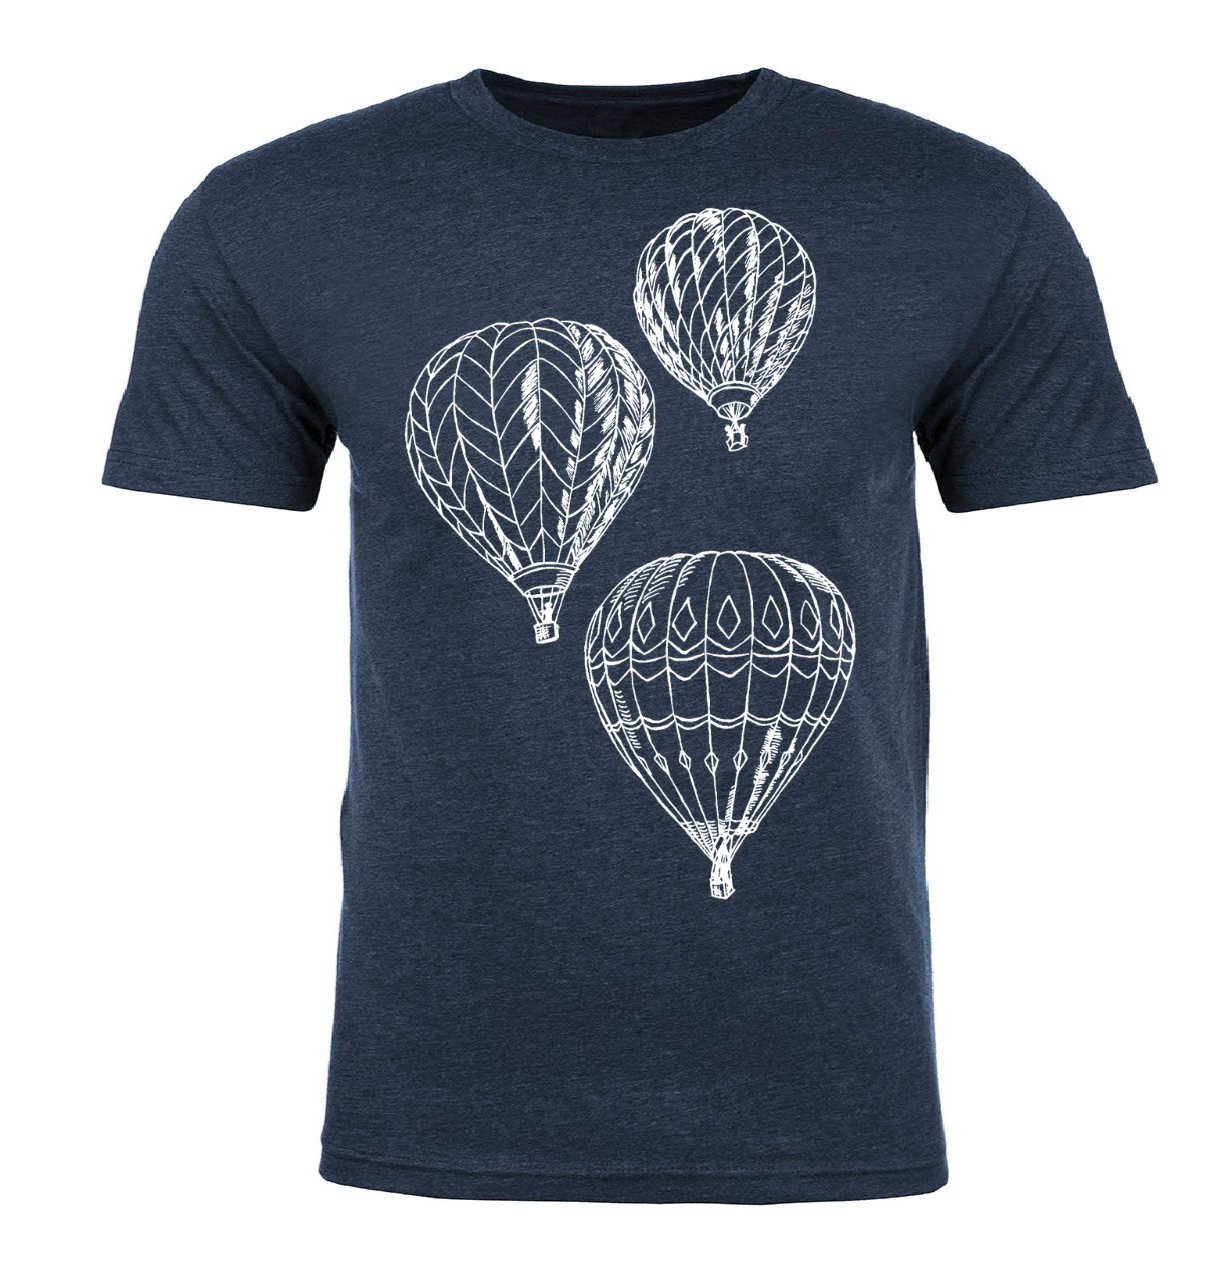 Hot Air Balloons Unisex T Shirt